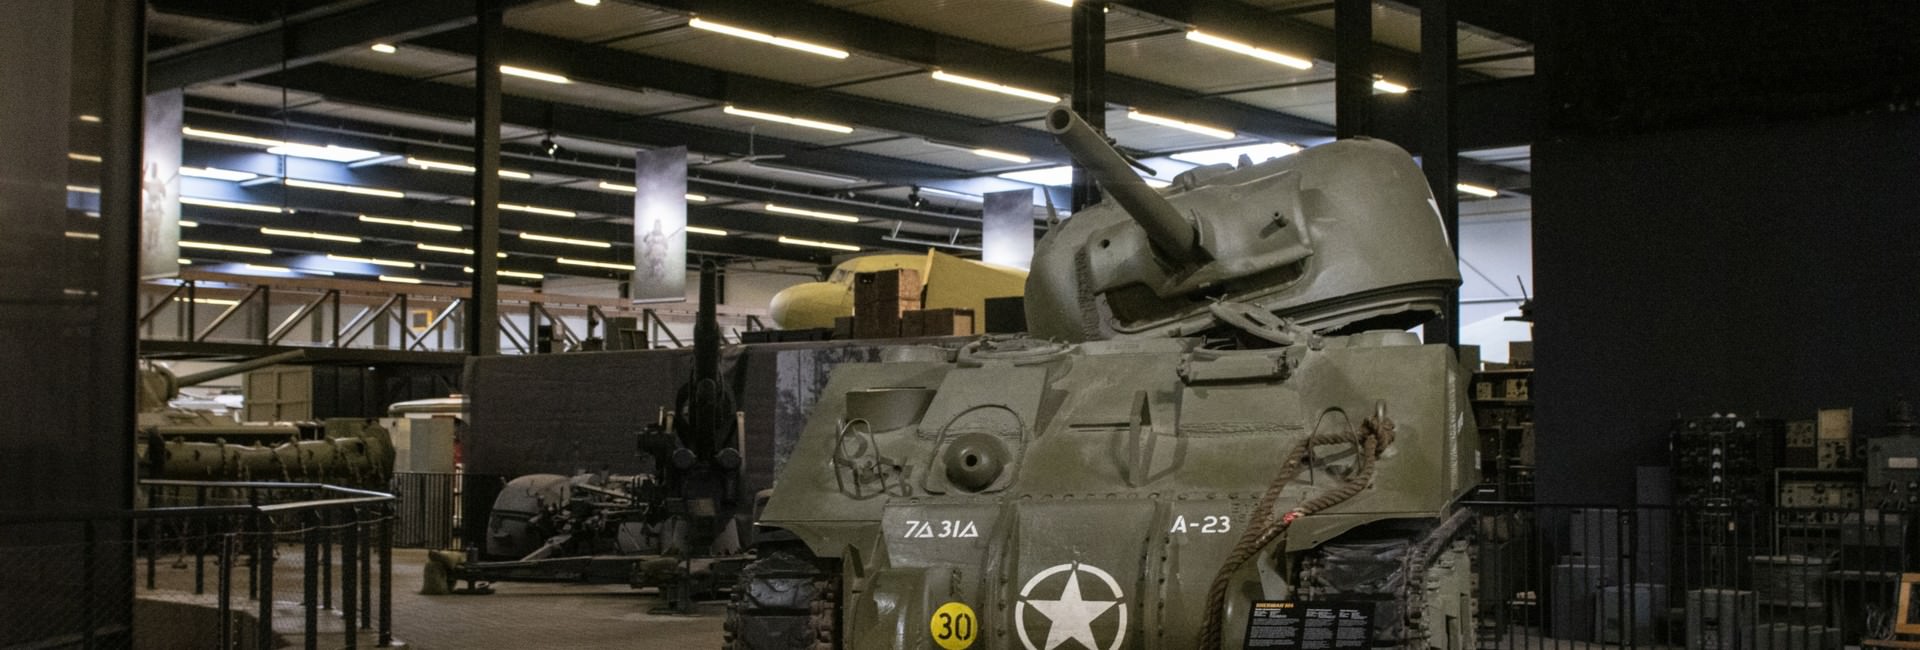 oorlogsmuseum - Sammlung Militärfahrzeuge